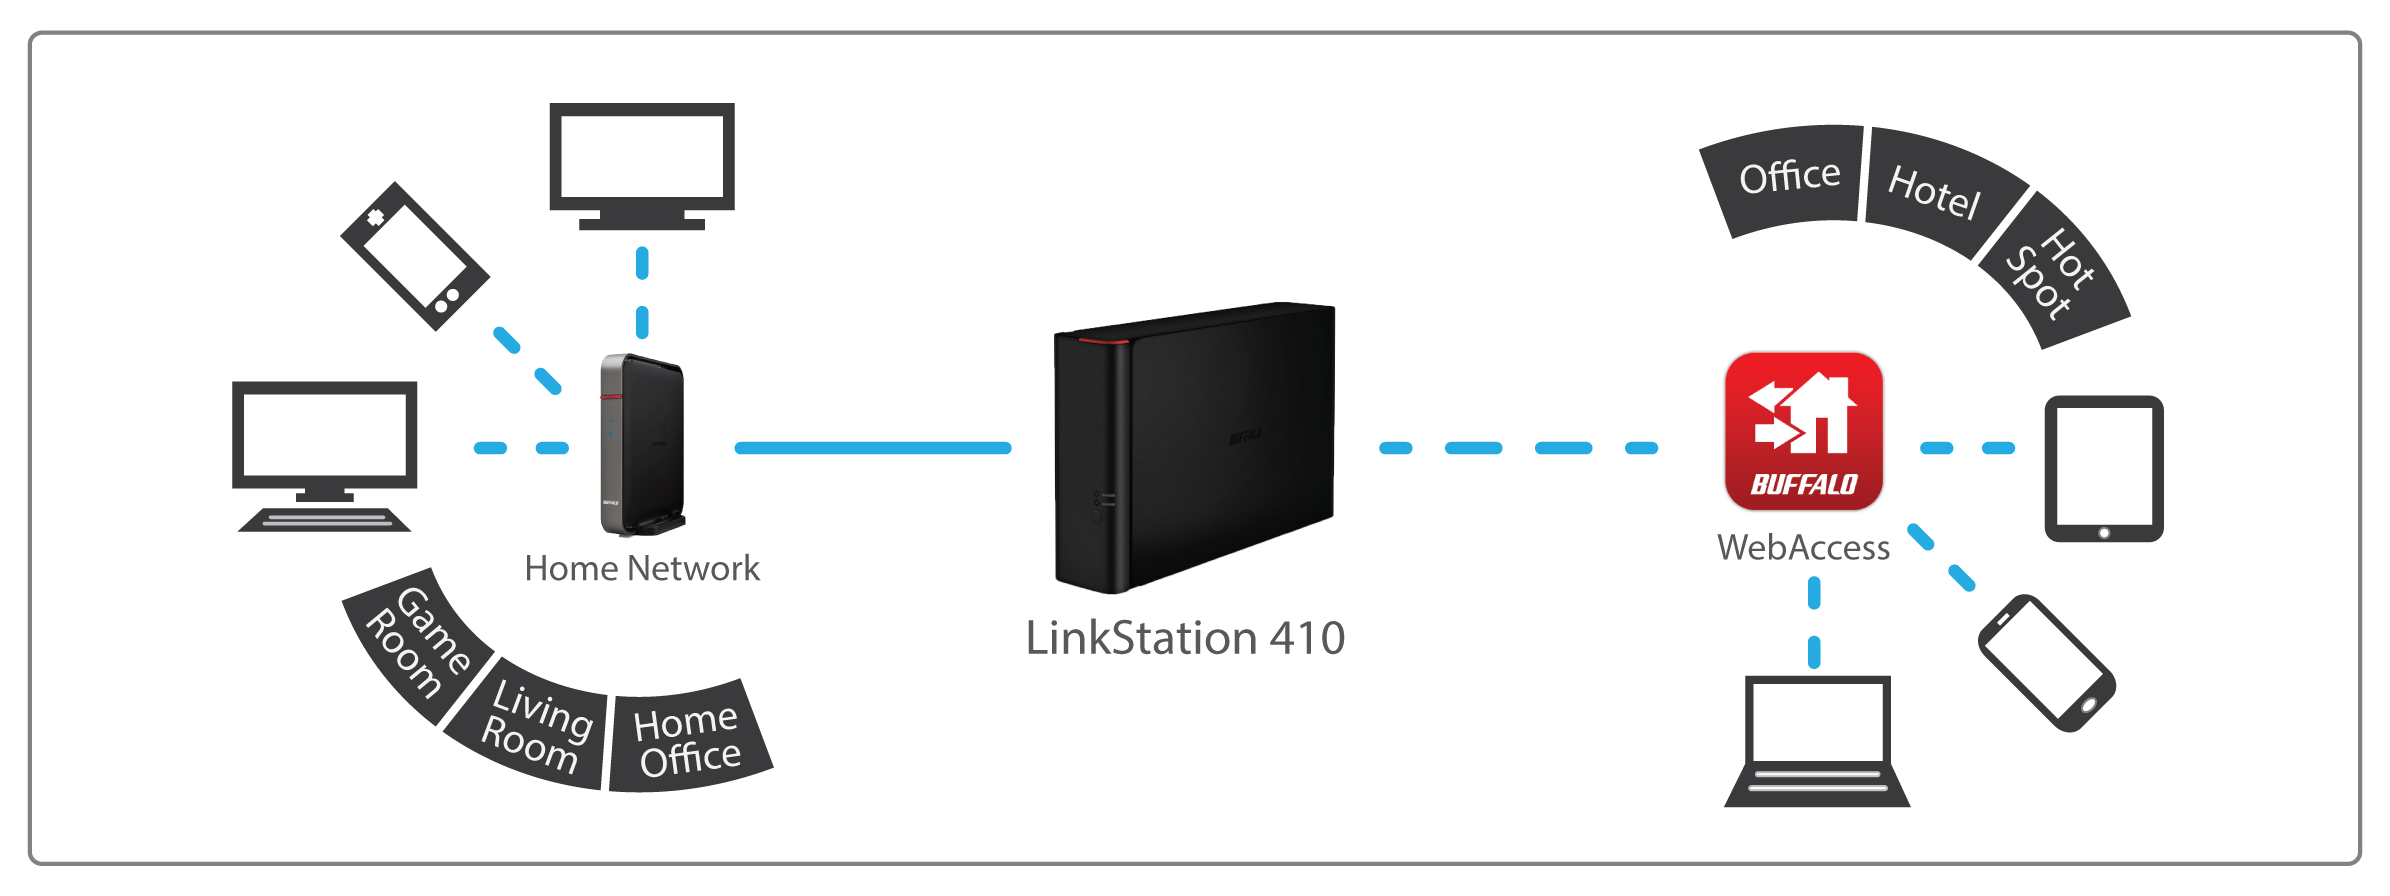 linkstation 400 secure central storage